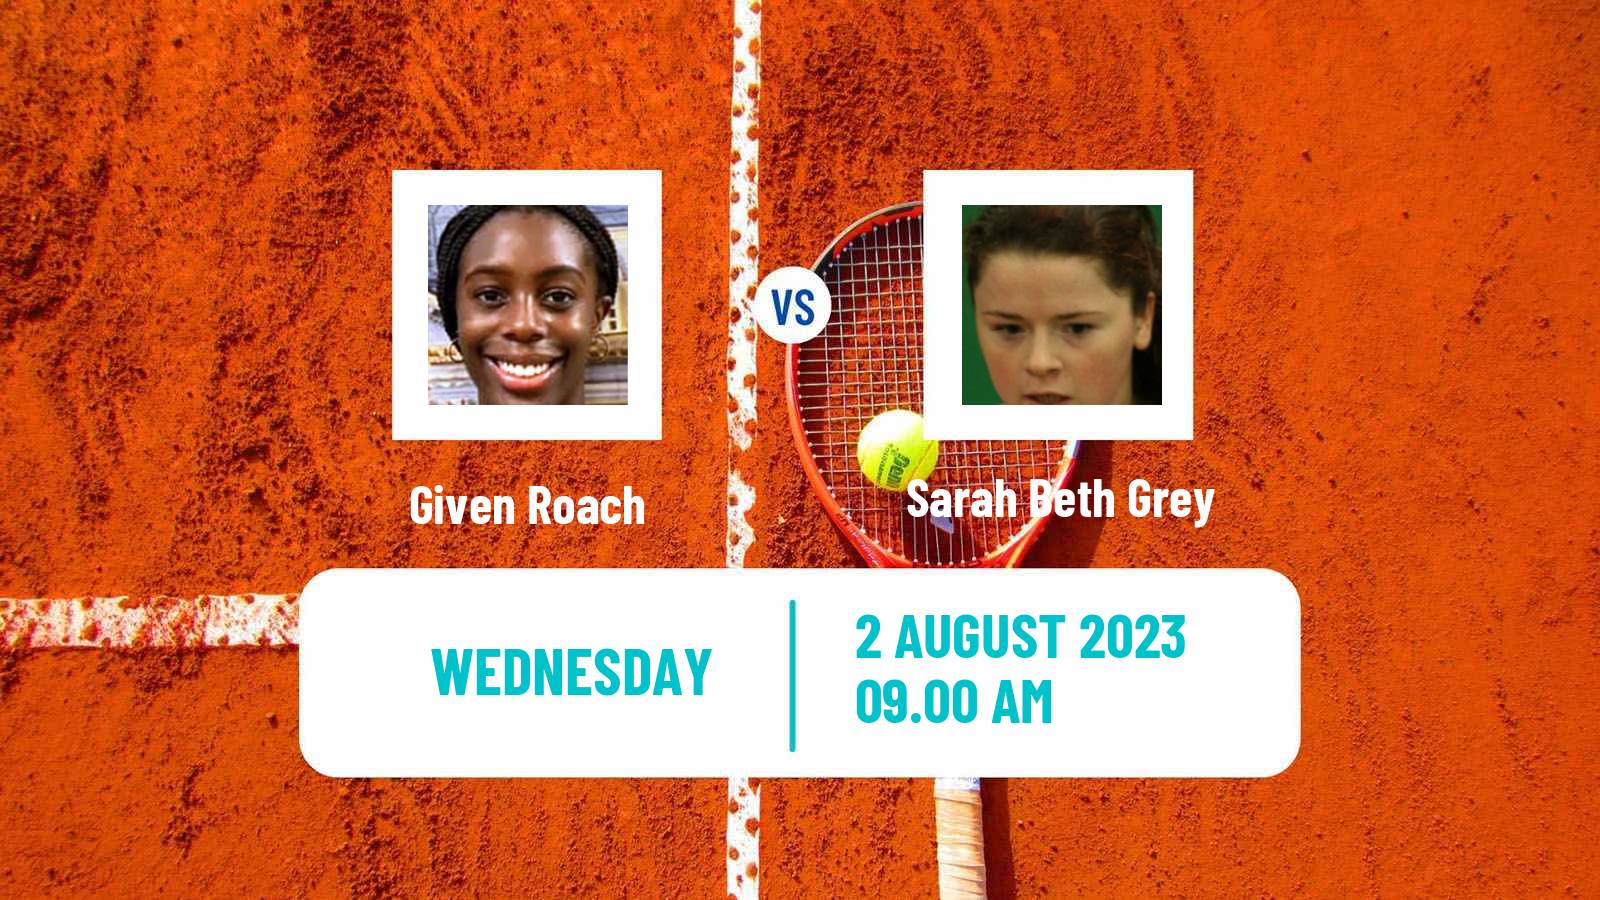 Tennis ITF W25 Foxhills Women Given Roach - Sarah Beth Grey